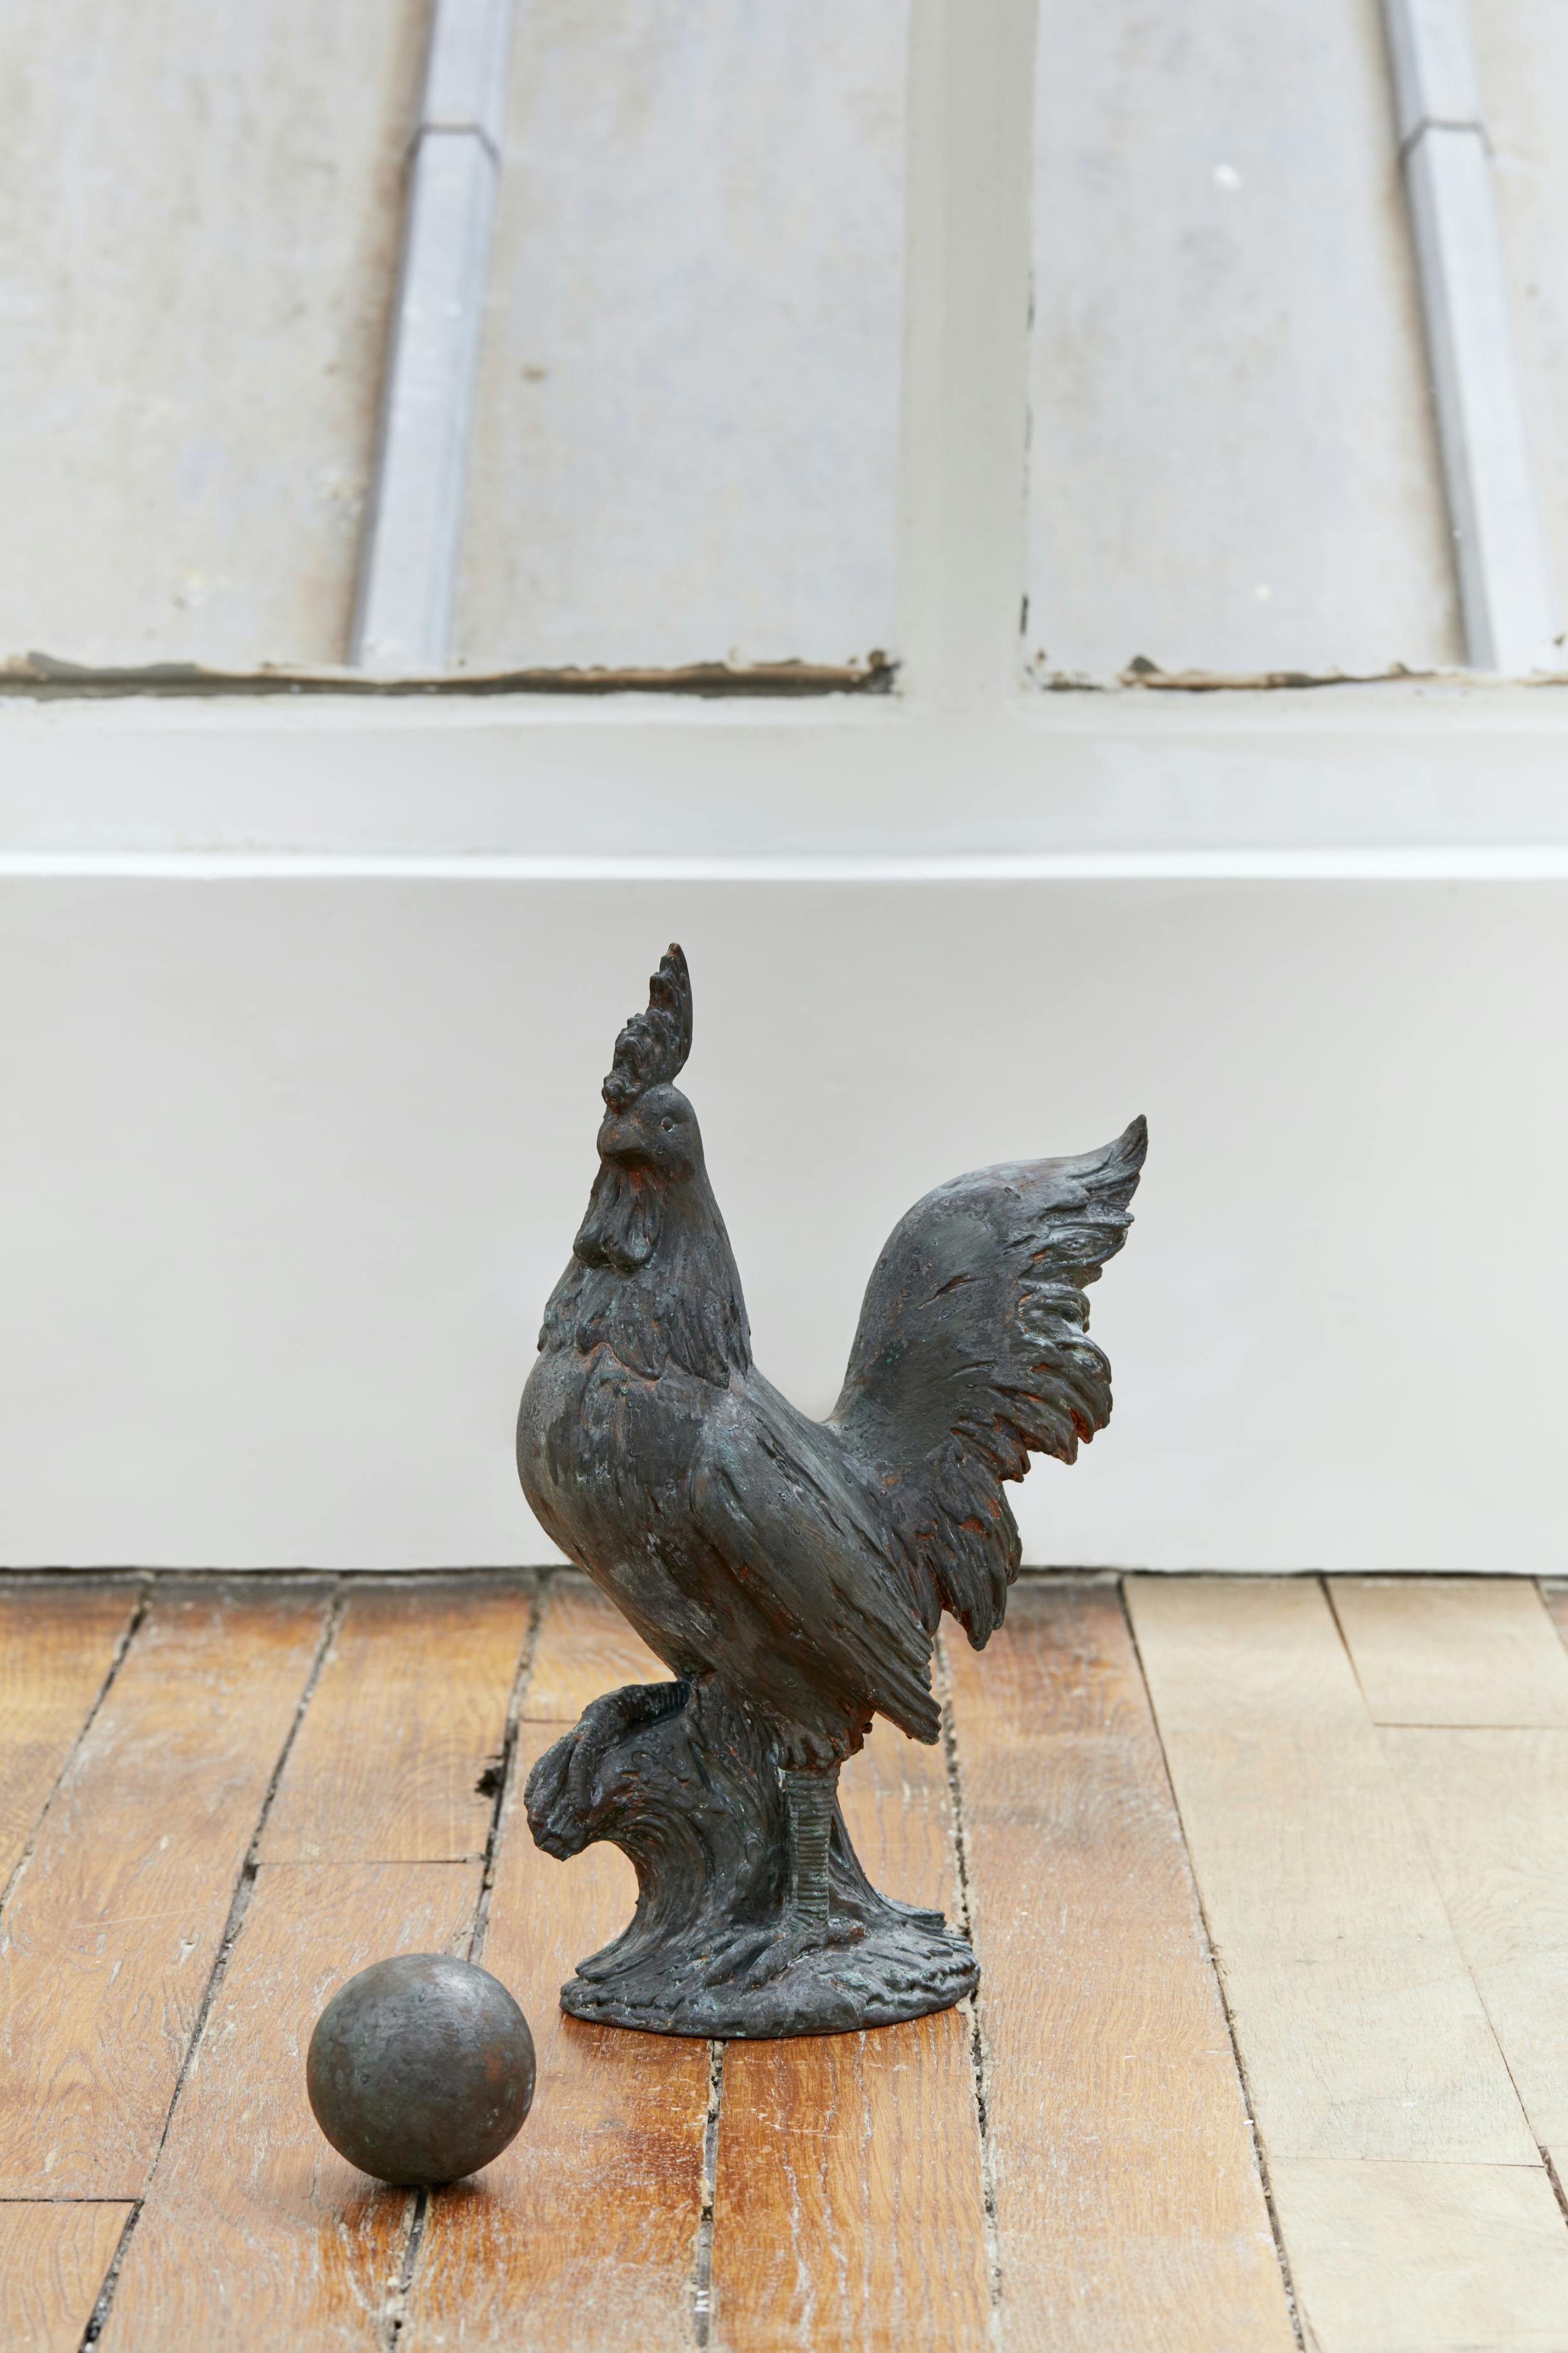 Petrine, Paris
Sophie Kovel
A Long Duration of Losses
Lieu de mémoire (Coq en bronze), 2022
polyurethane, patinated copper
38.1 x 25.4 cm